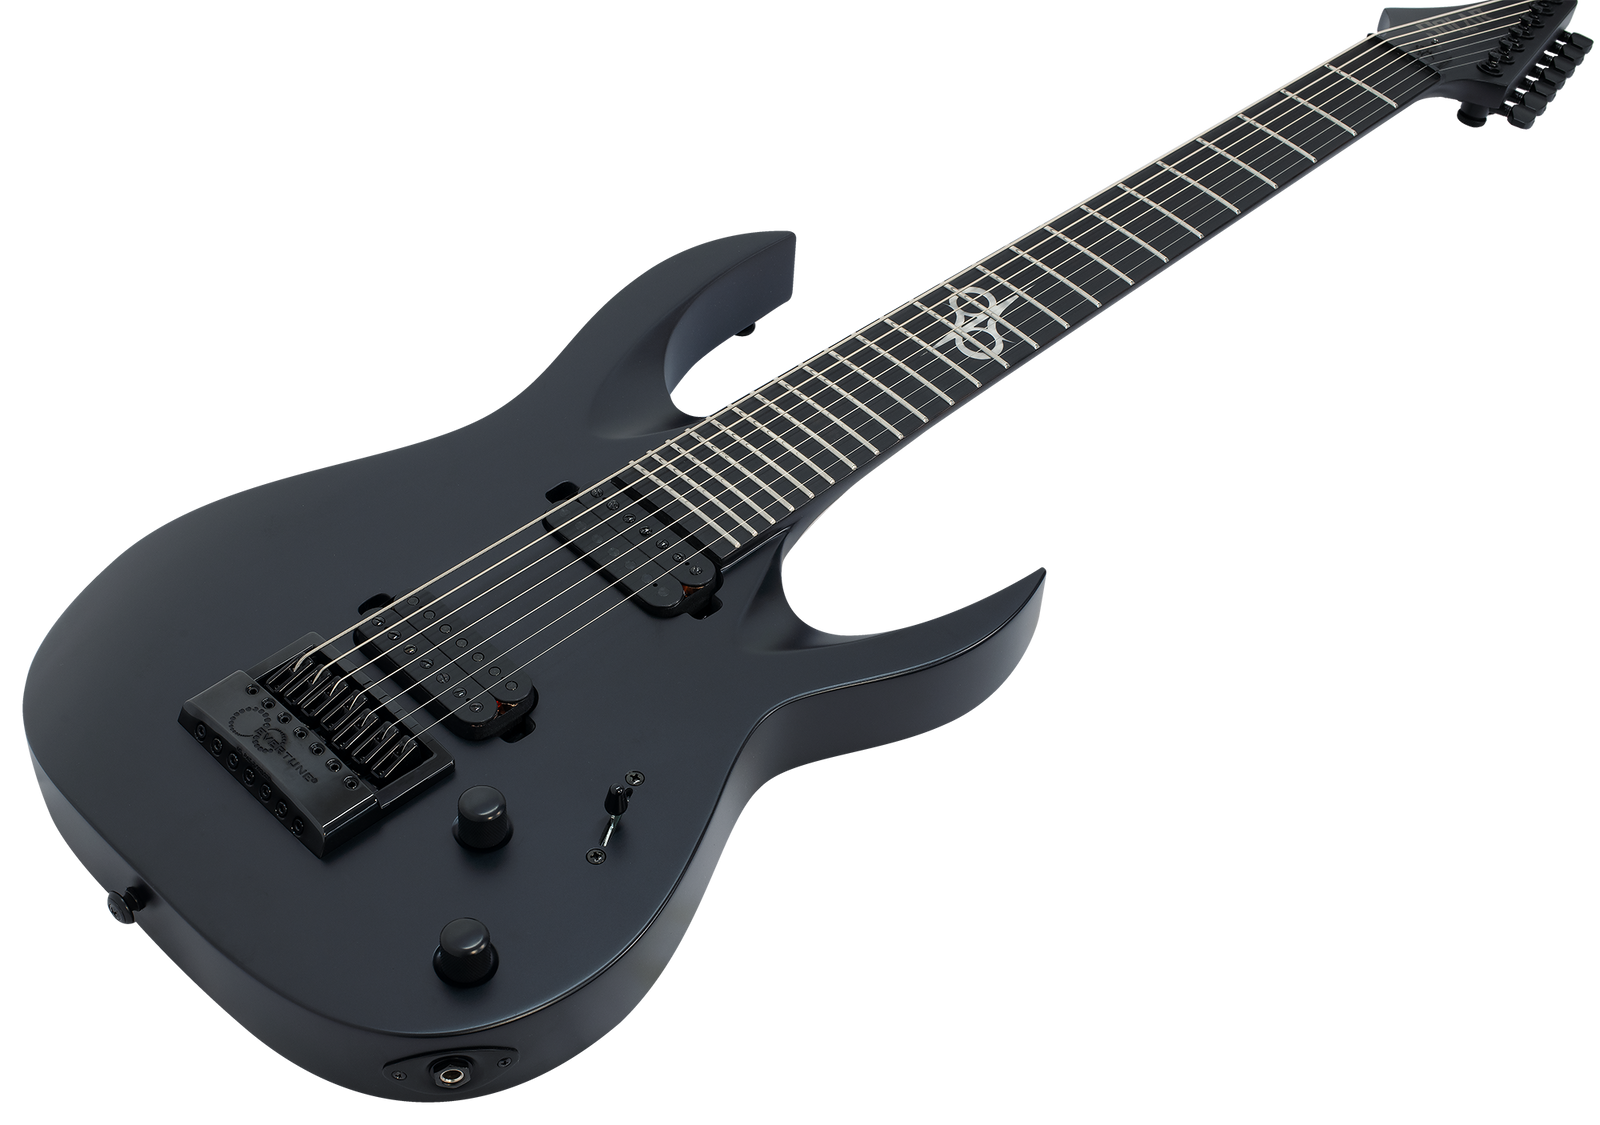 SOLAR A1.7C Electric Guitar - Carbon Black Matte